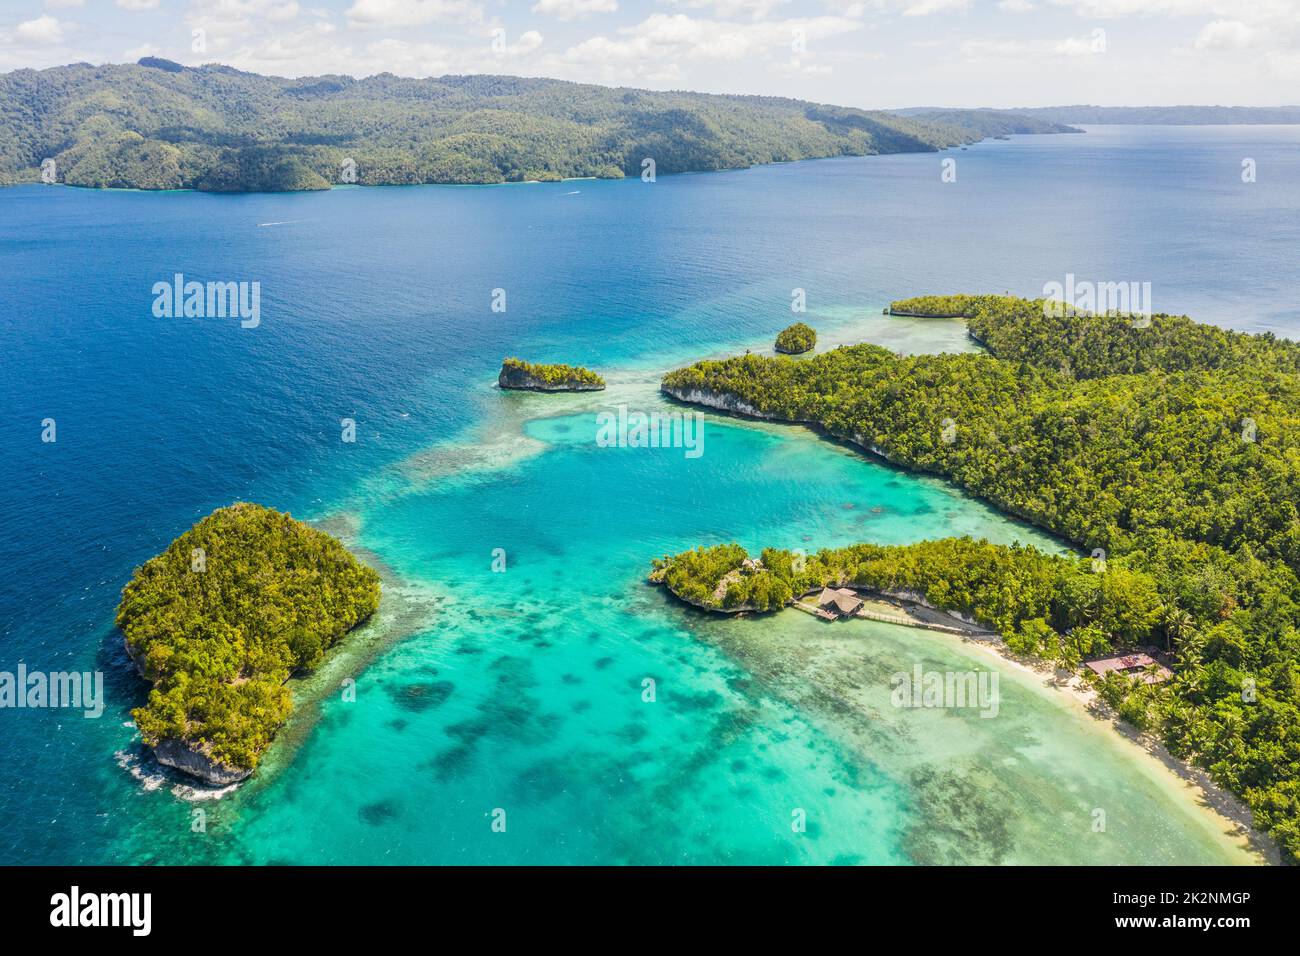 Eine wunderschöne Insel. Hochwinkelaufnahme der Raja Ampat Inseln, die vom Indo-Pazifik umgeben sind. Stockfoto